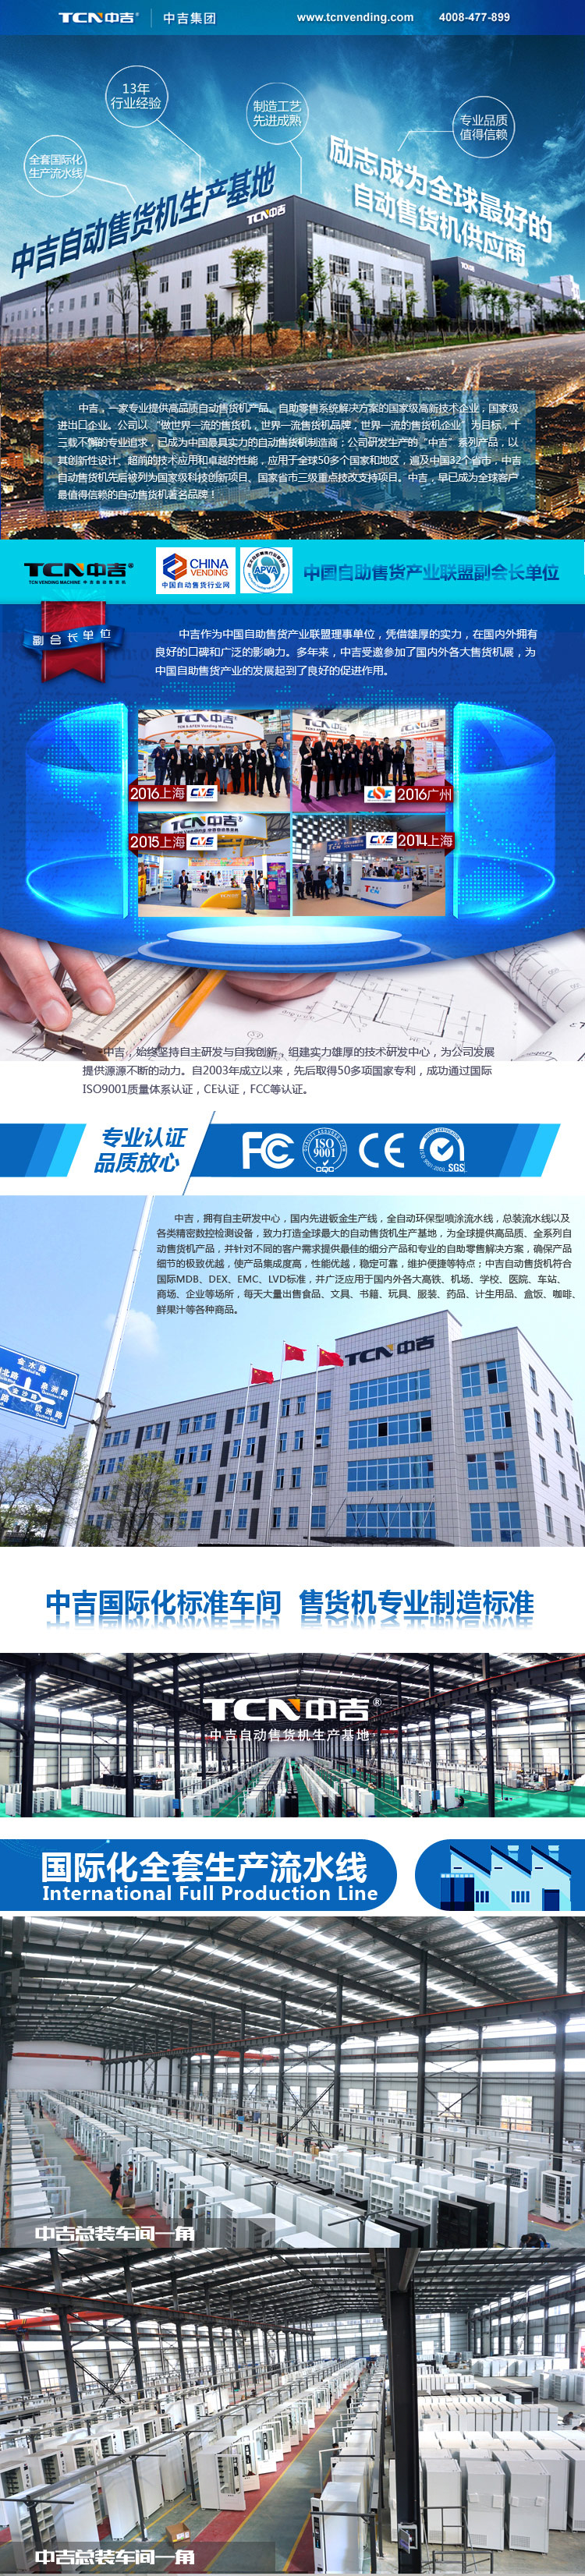 中吉集团旗下湖南中谷科技股份有限公司正式建成，欢迎广大客户前台参观体验。（图）_1